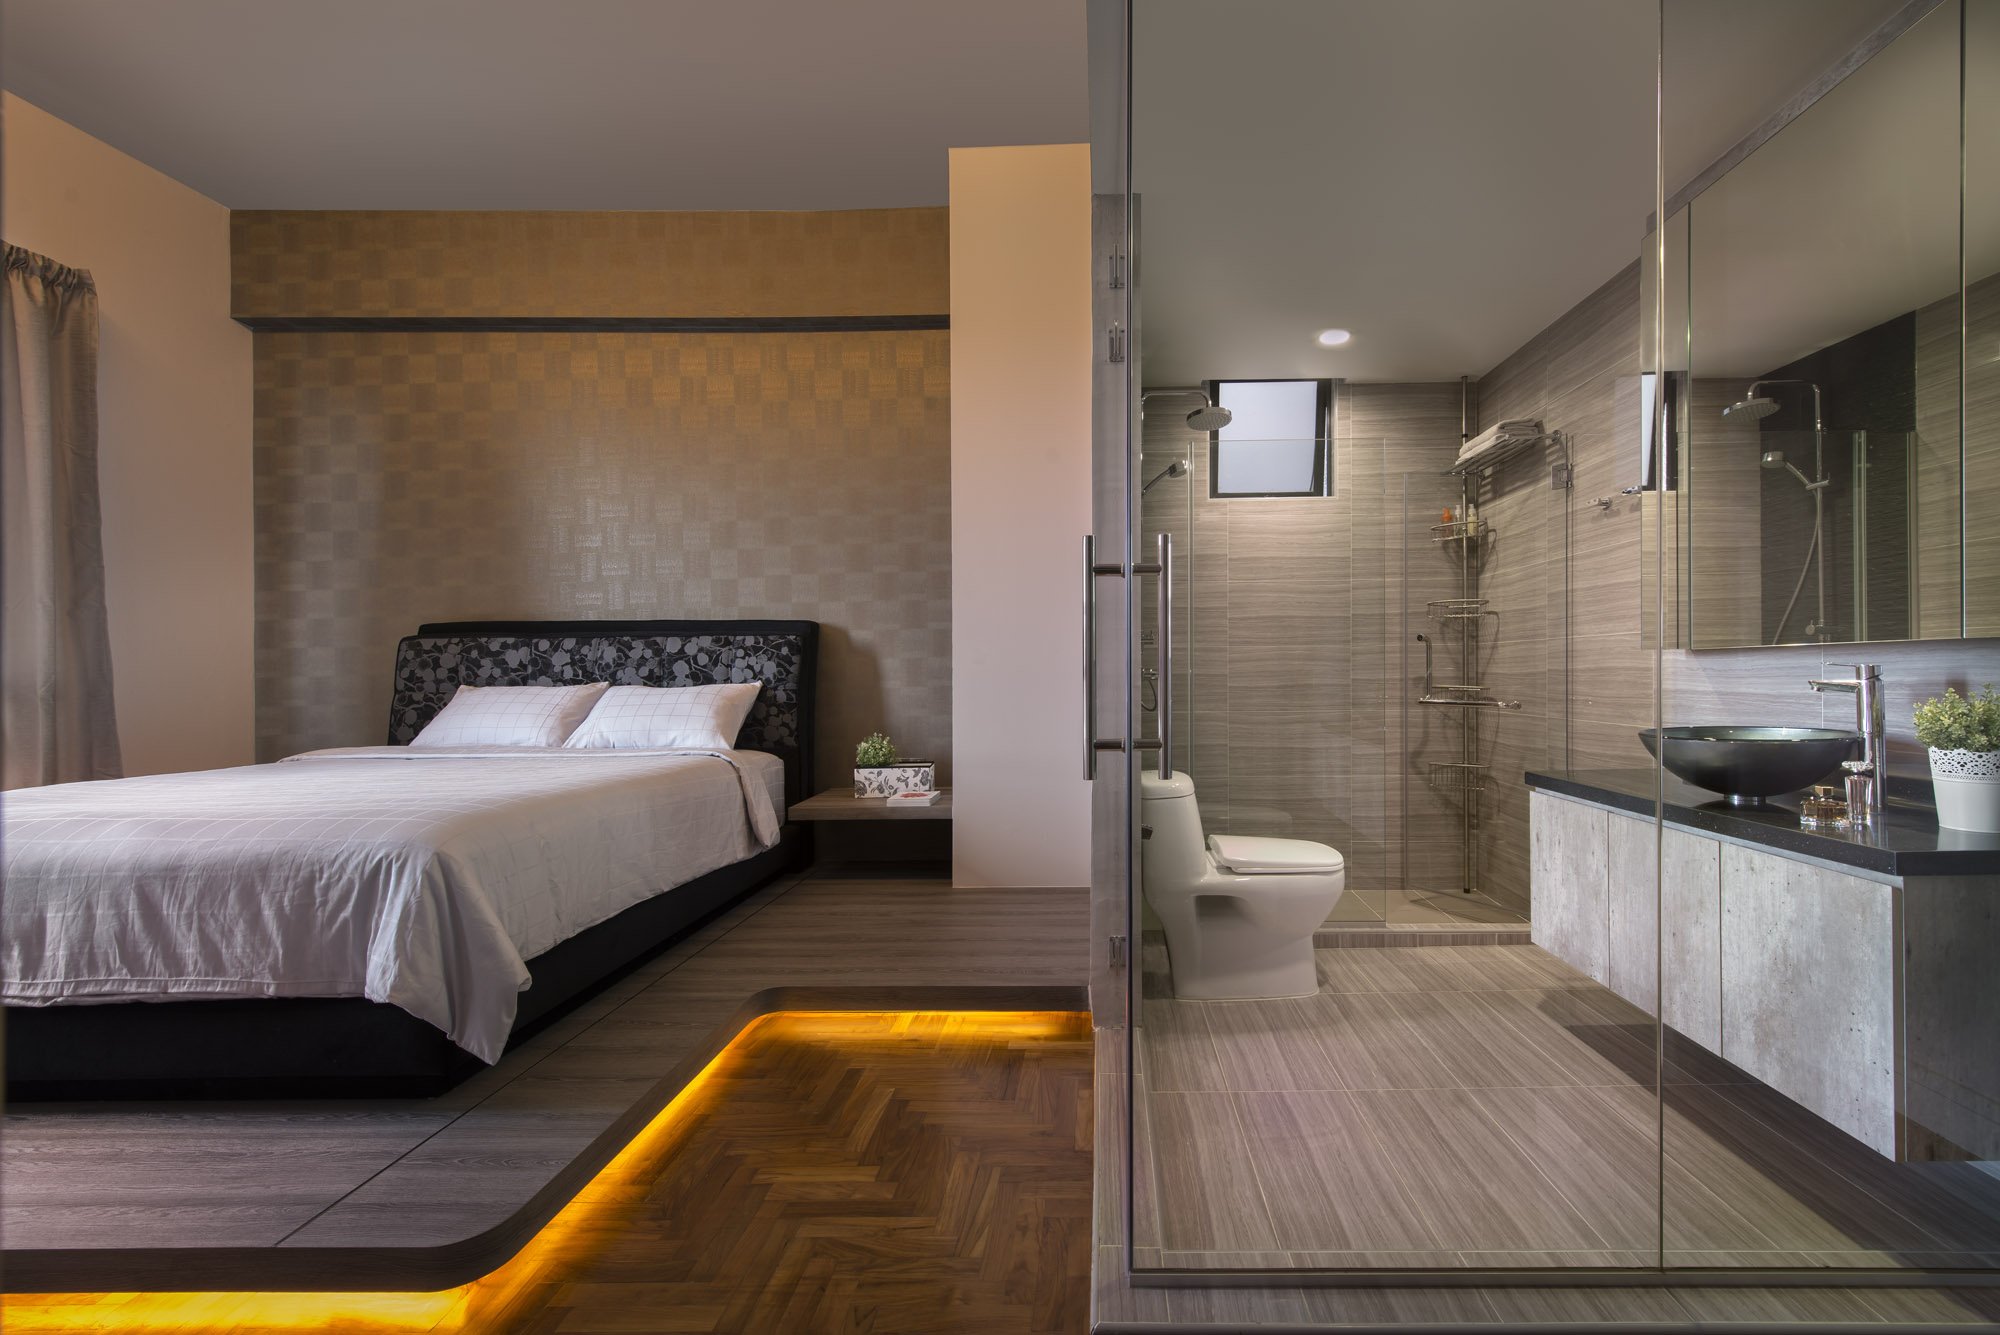 Гардеробная в спальне (100 фото): дизайн спальни с гардеробной и варианты планировки